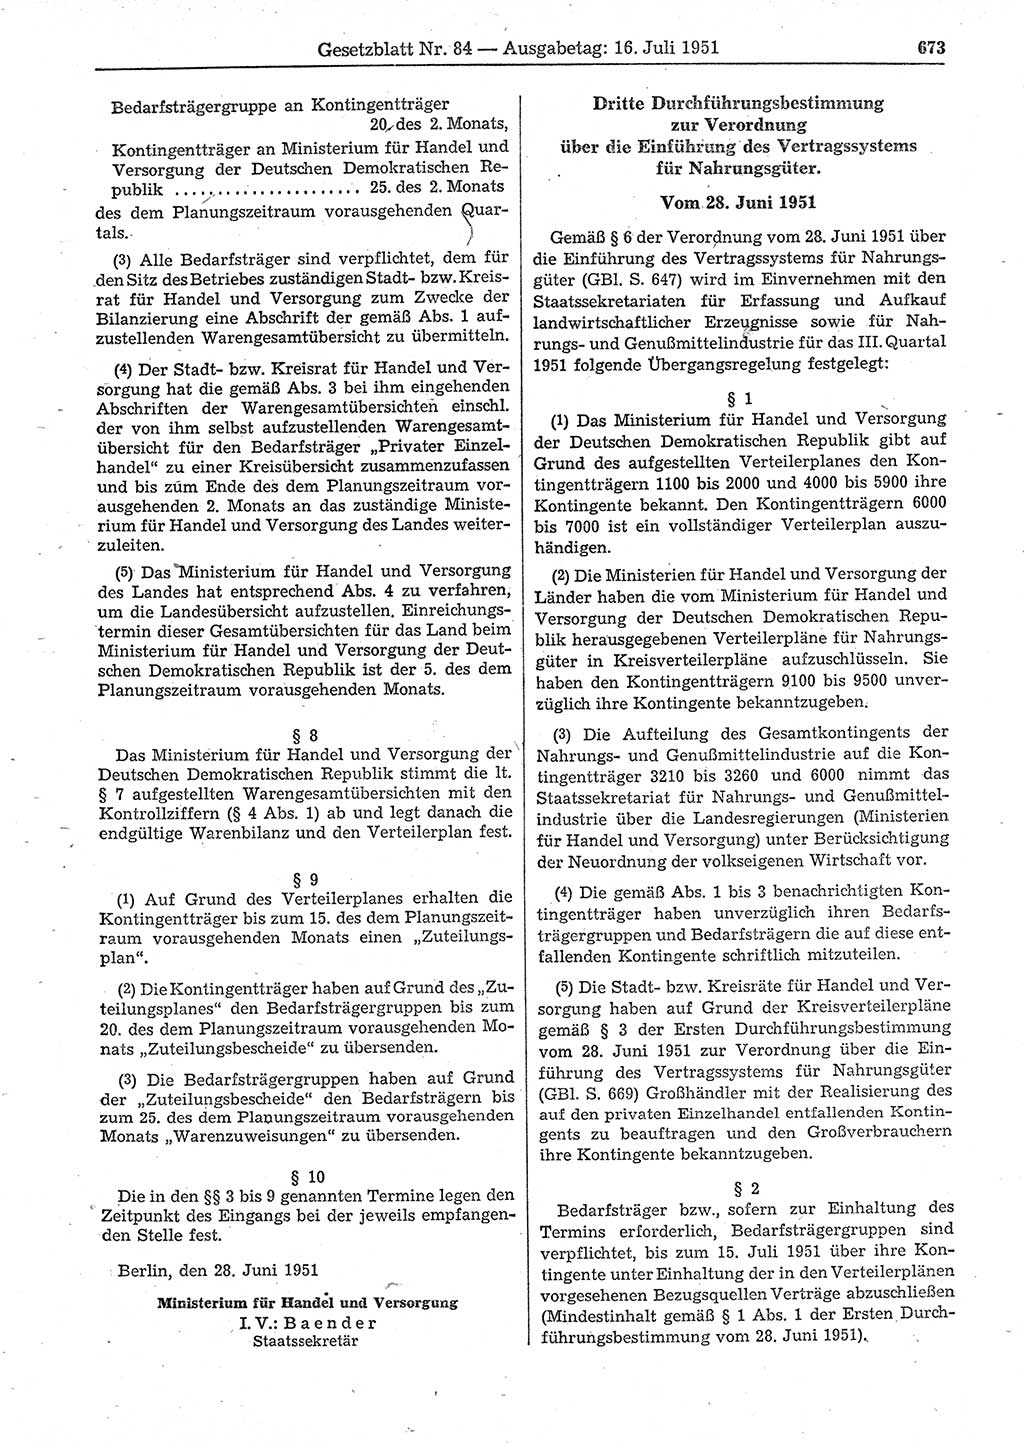 Gesetzblatt (GBl.) der Deutschen Demokratischen Republik (DDR) 1951, Seite 673 (GBl. DDR 1951, S. 673)